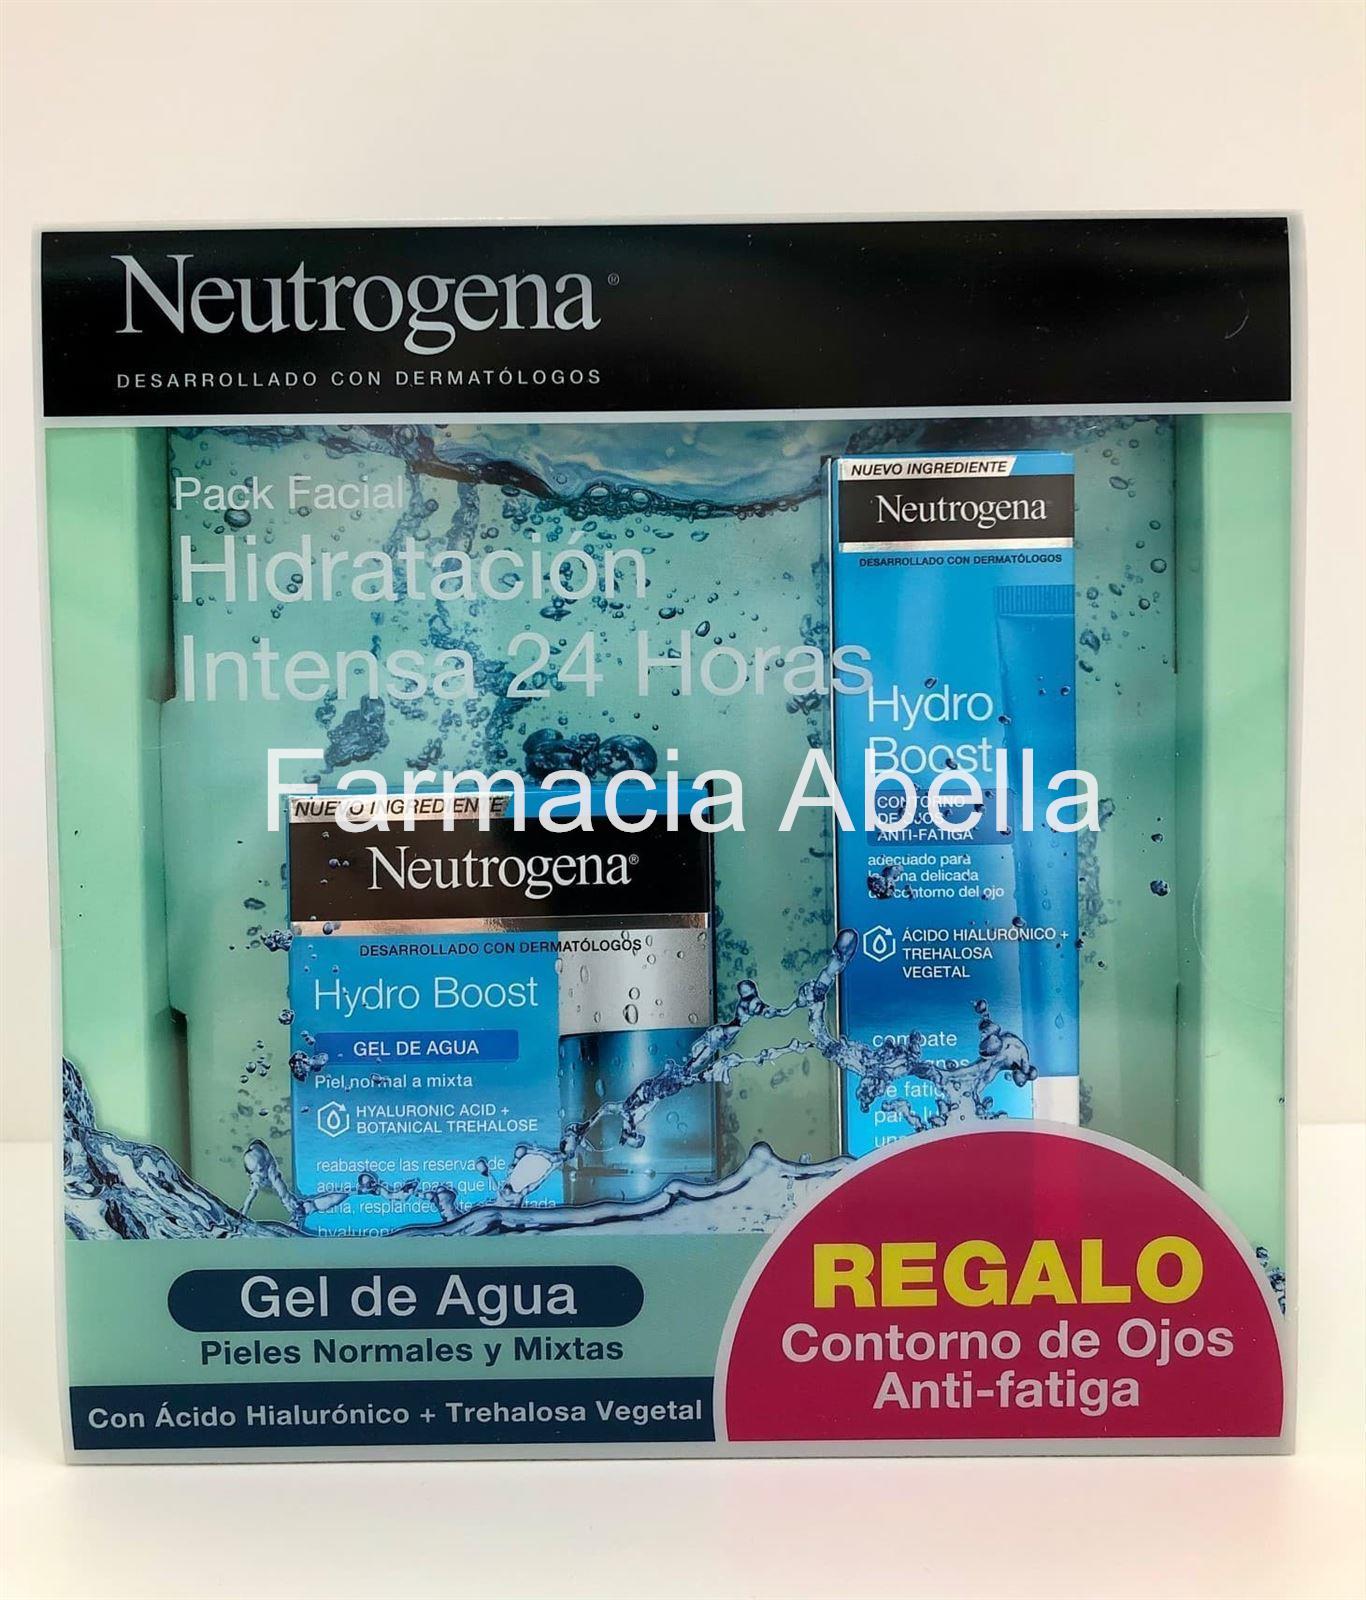 Neutrogena hydro boots gel de agua 50 ml + contorno de ojos crema anti- fatiga de regalo - Imagen 2